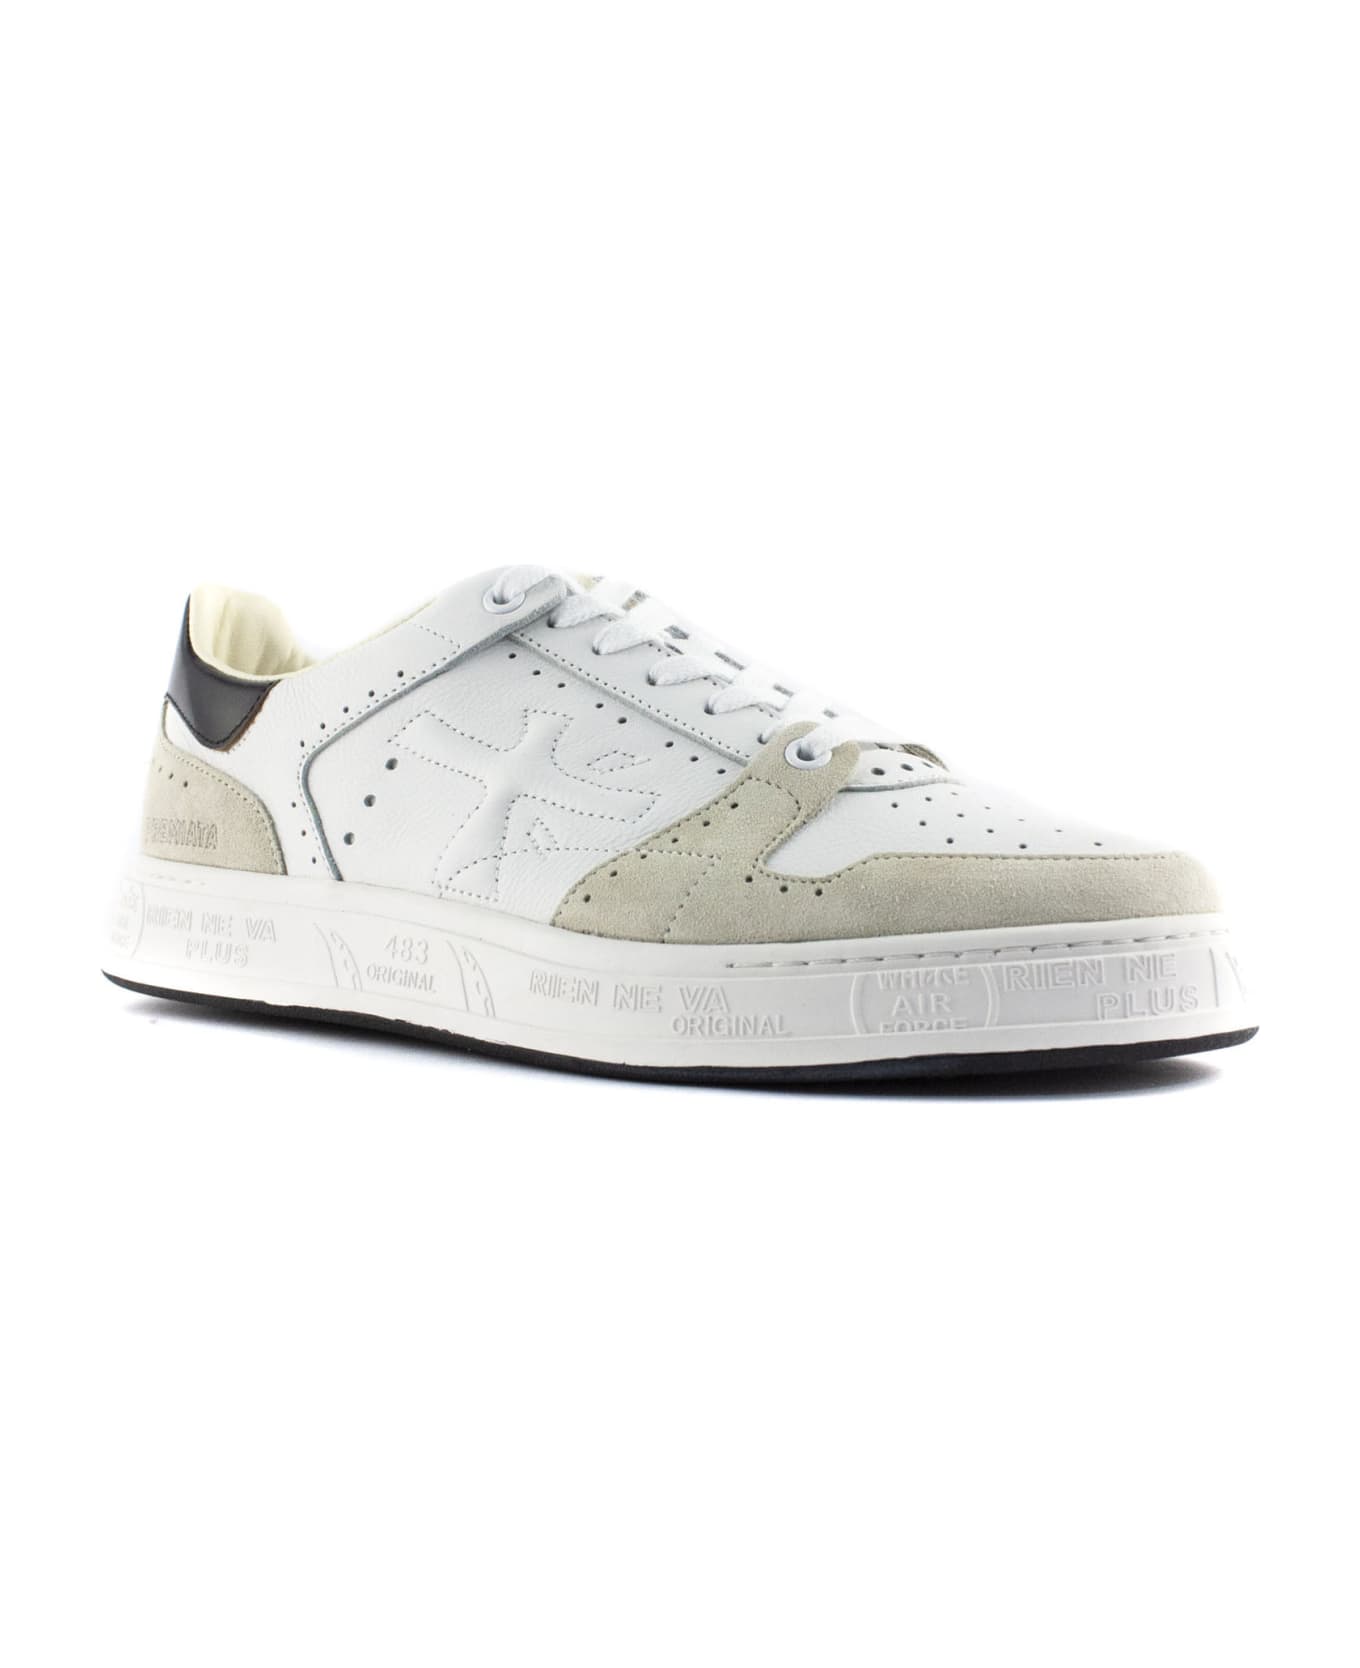 Premiata Quinn Sneakers In White Leather - Bianco/nero